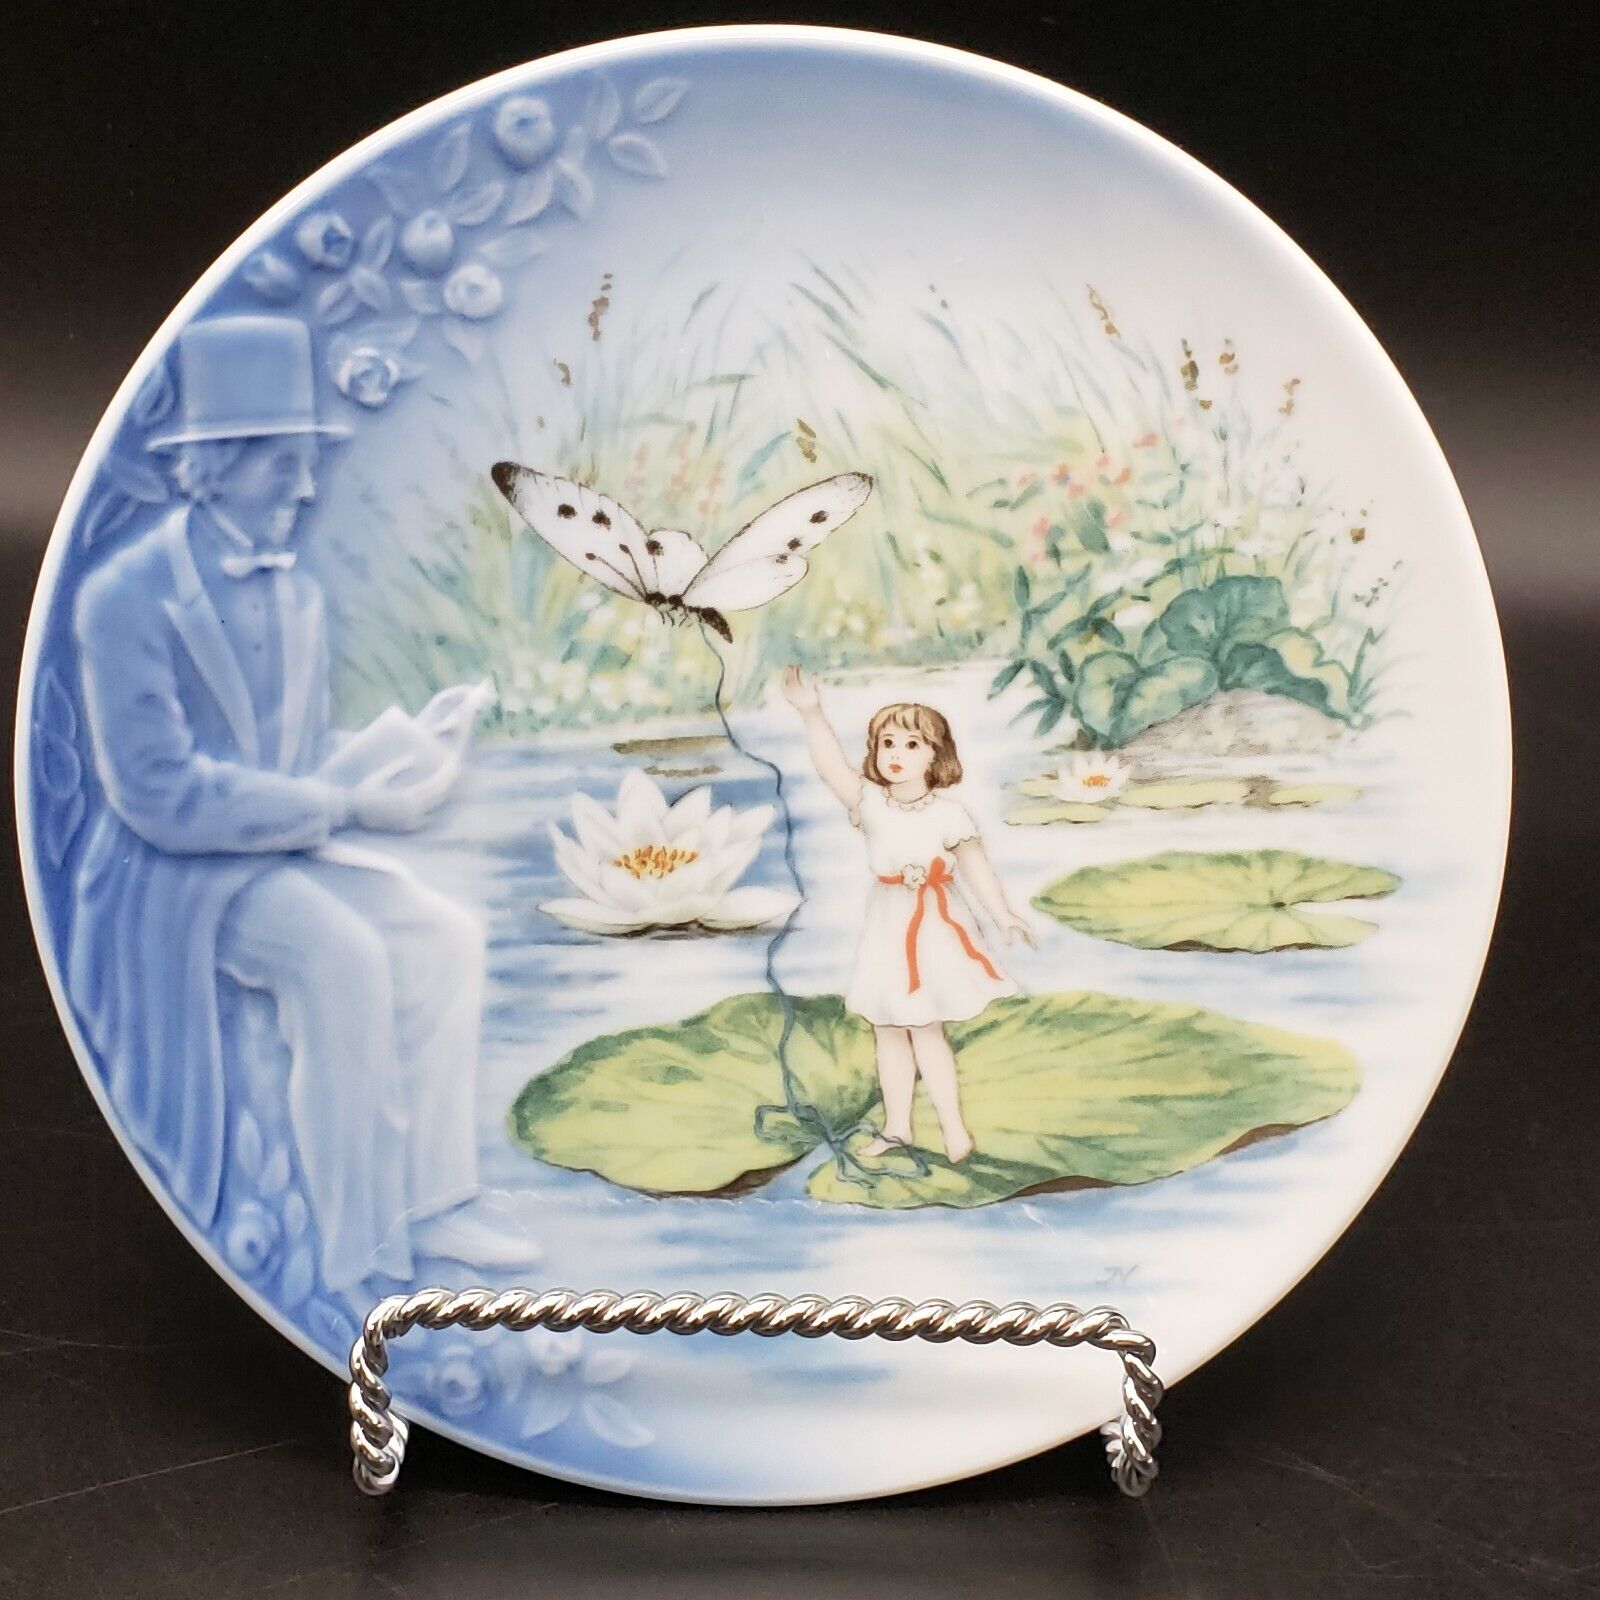 Vintage Bing & Grondahl Hans Christian Andersen The Storyteller Thumbelina Plate